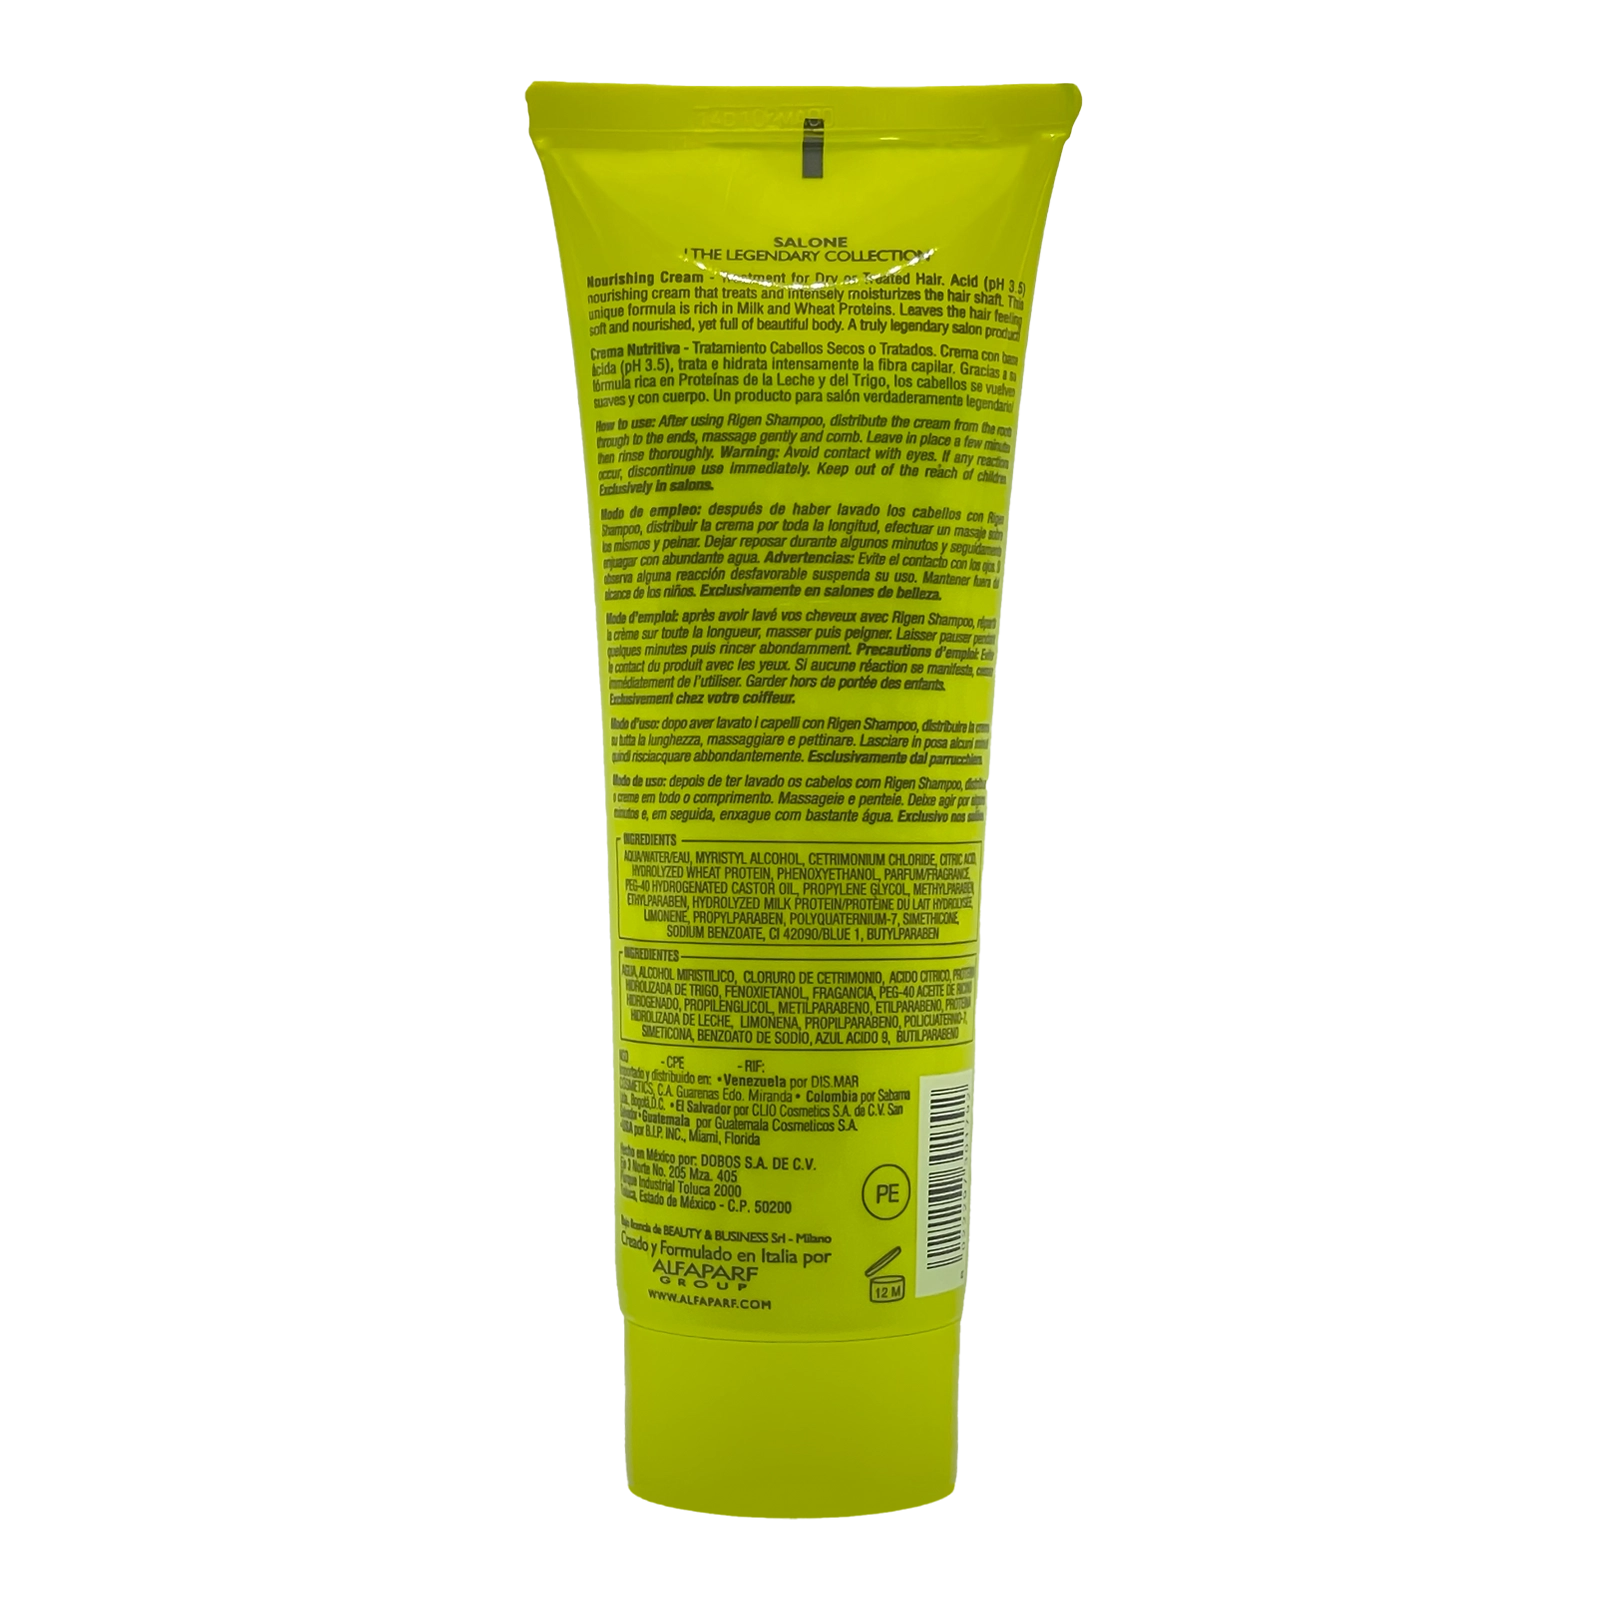 Farline - Limpia y purifica tu cabello con nuestro Champú Seborregulador  formulado con un 92% de ingredientes naturales y enriquecido con Zinc PCA,  extracto de Moringa, Vitamina E y pro-vitamina B5. Manten